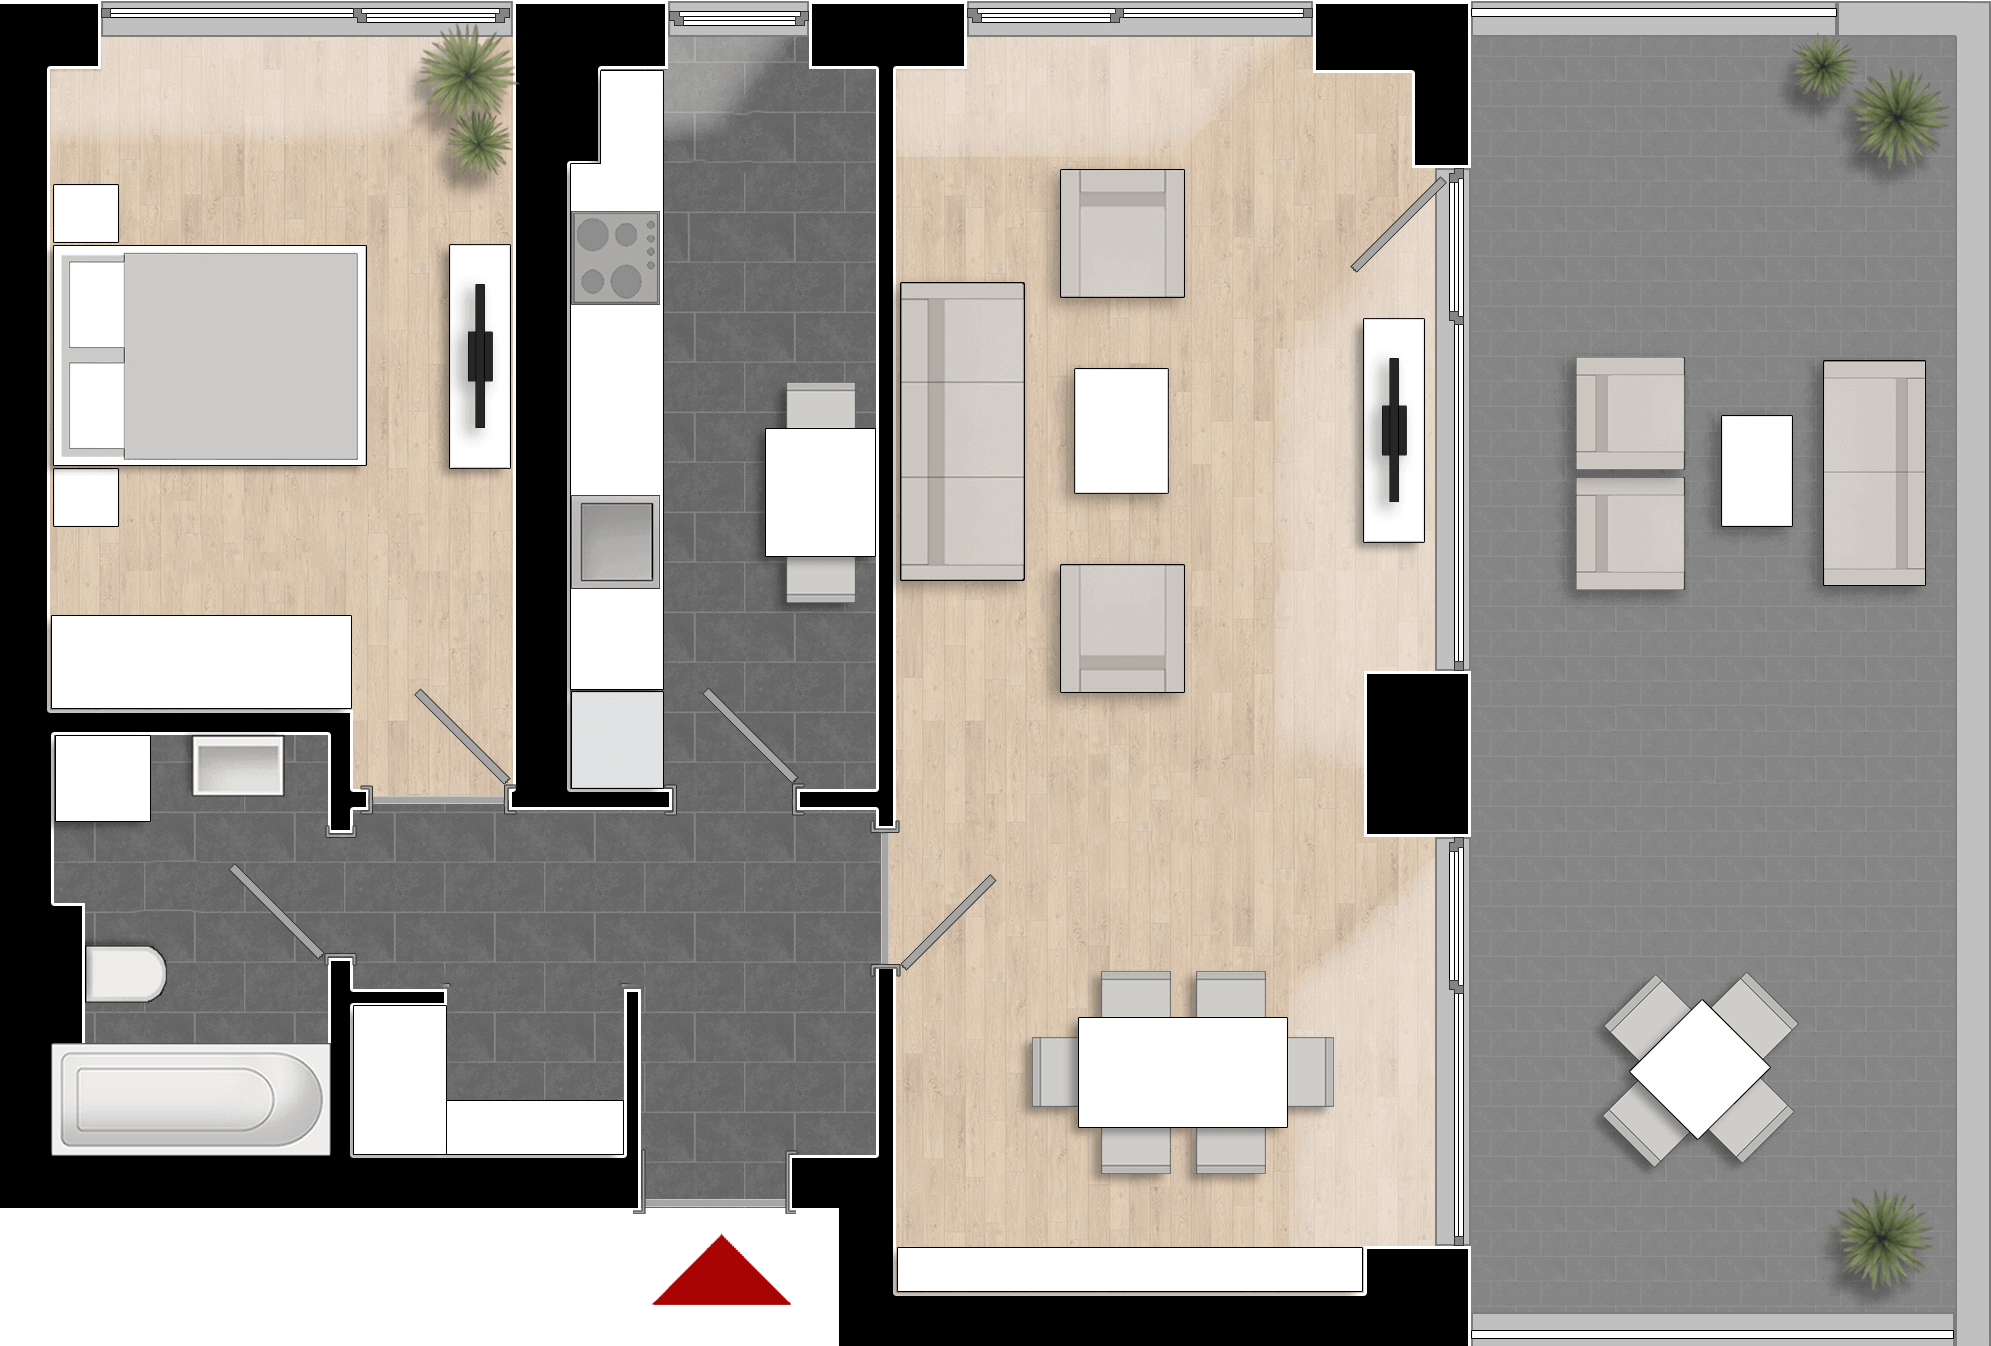  Apartament 1006, Tip de apartament 2C cu 2 camere 